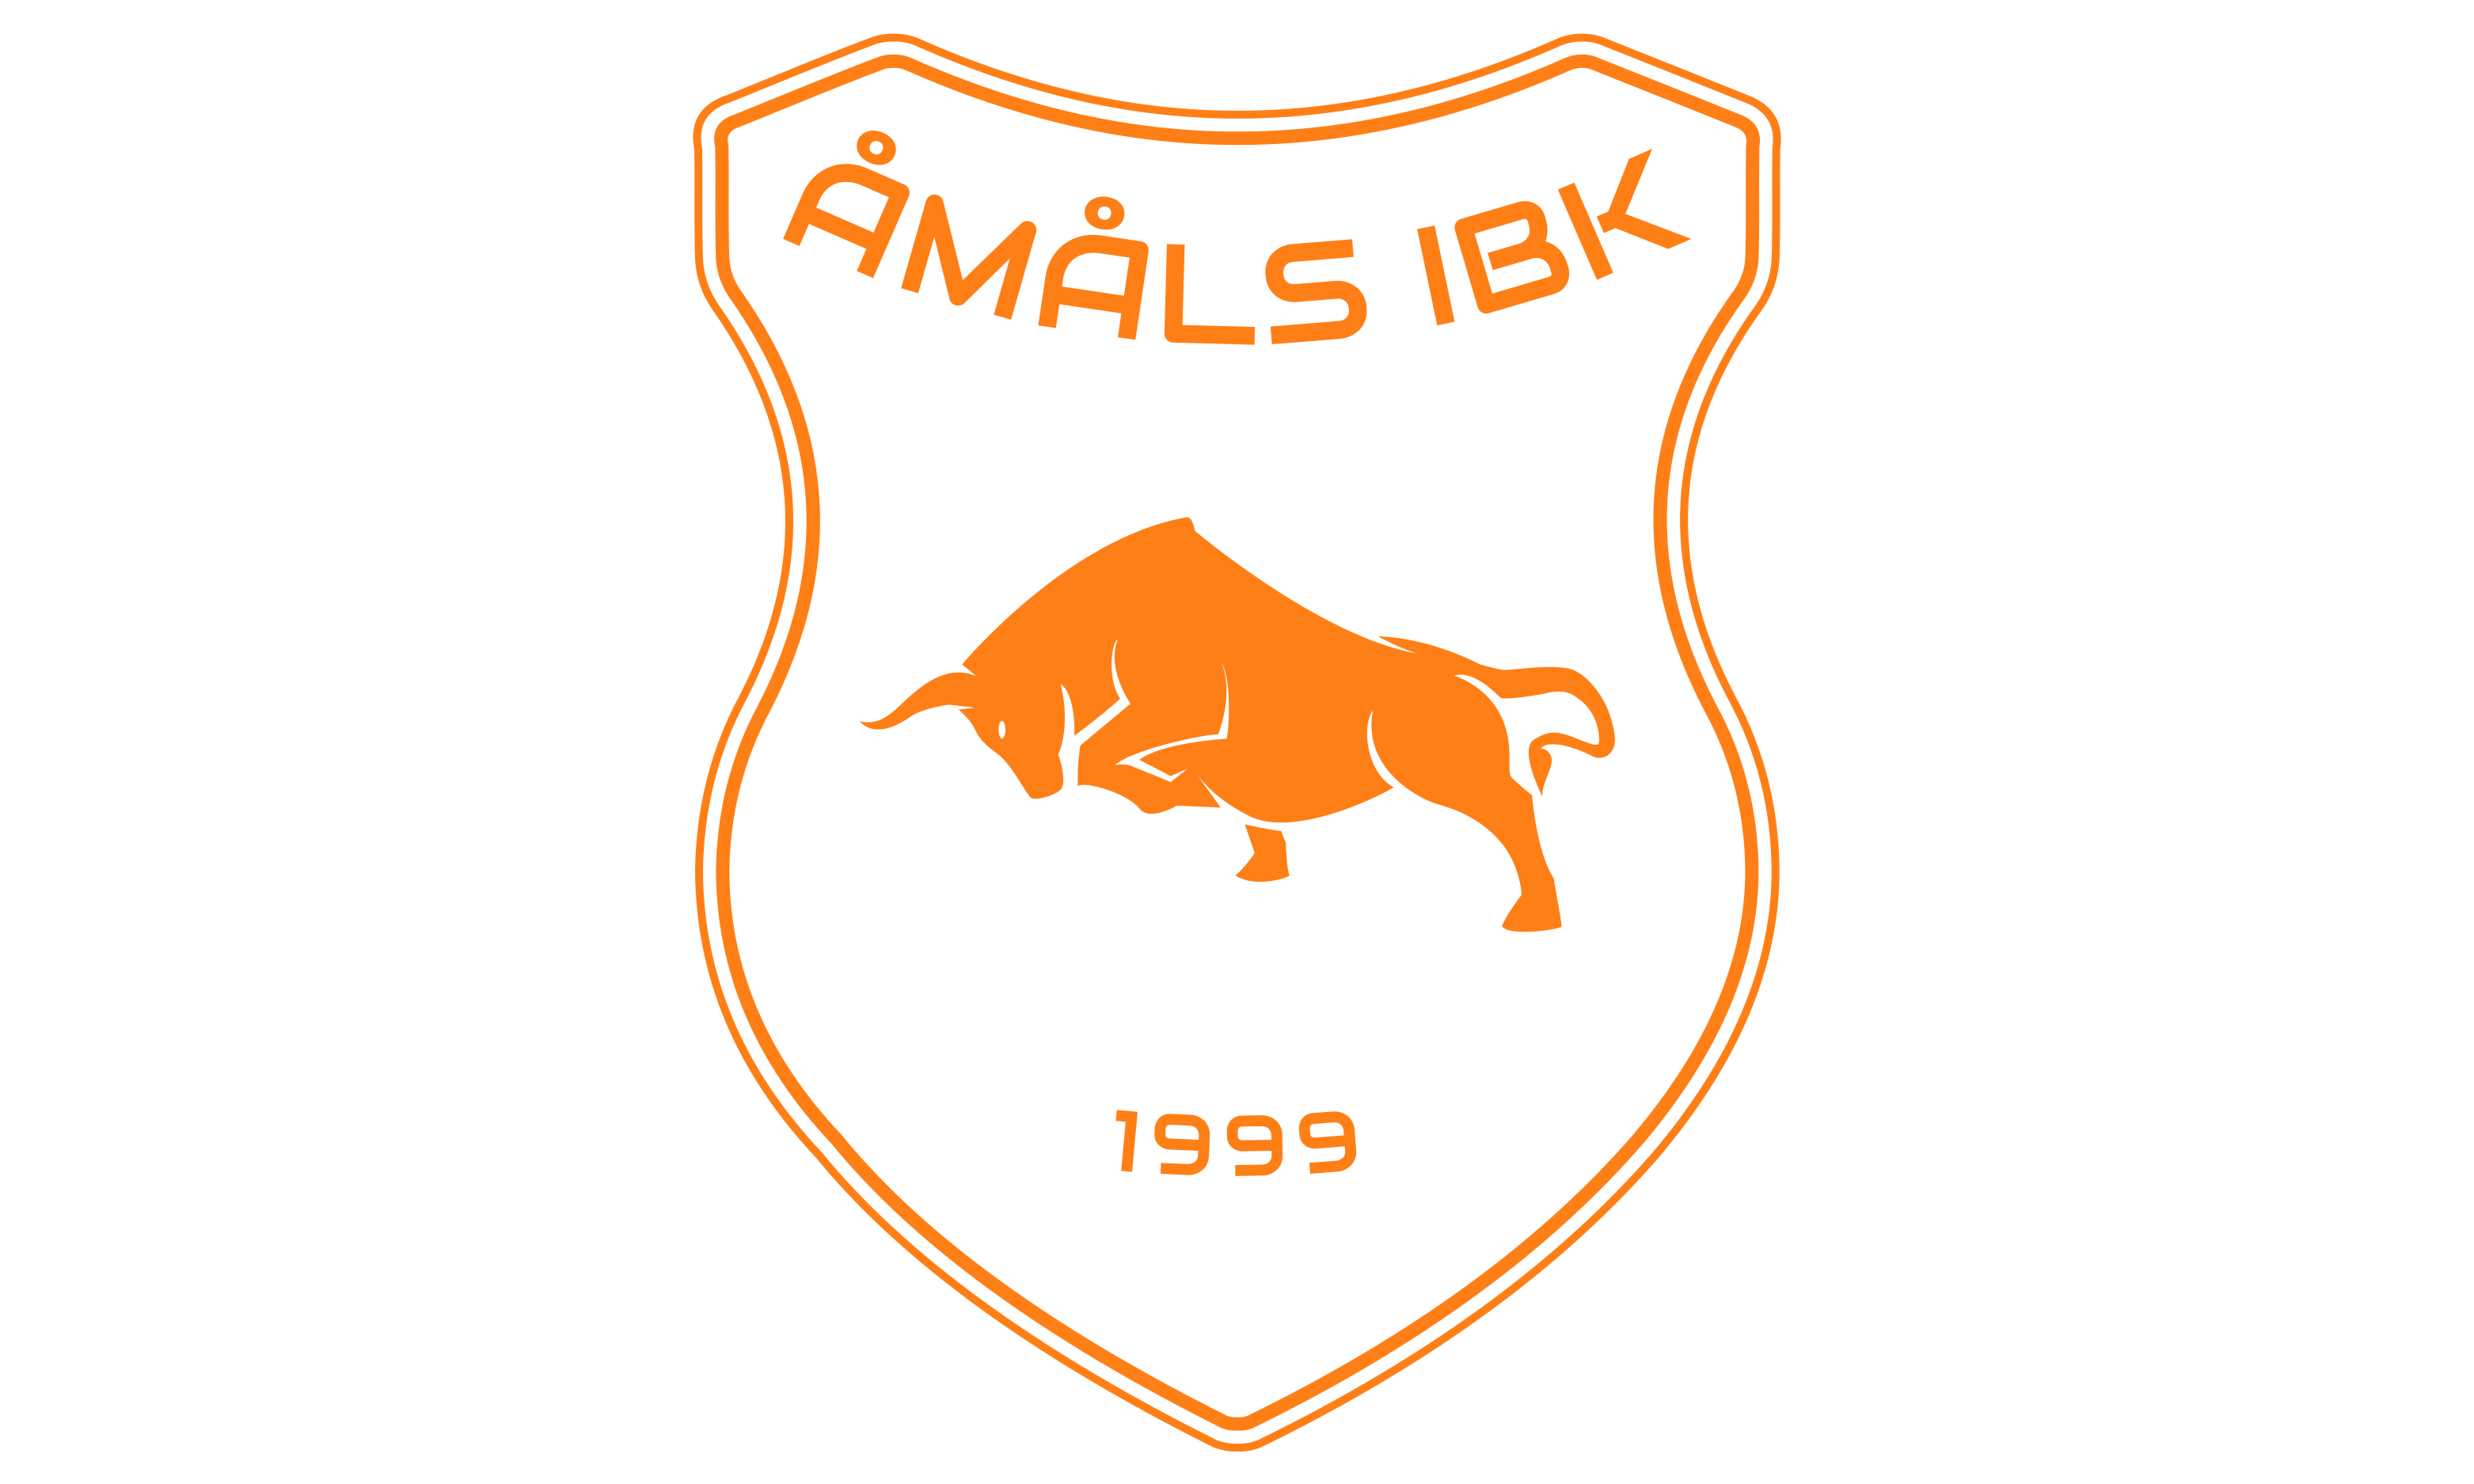 Åmåls Innebandyklubbs emblem